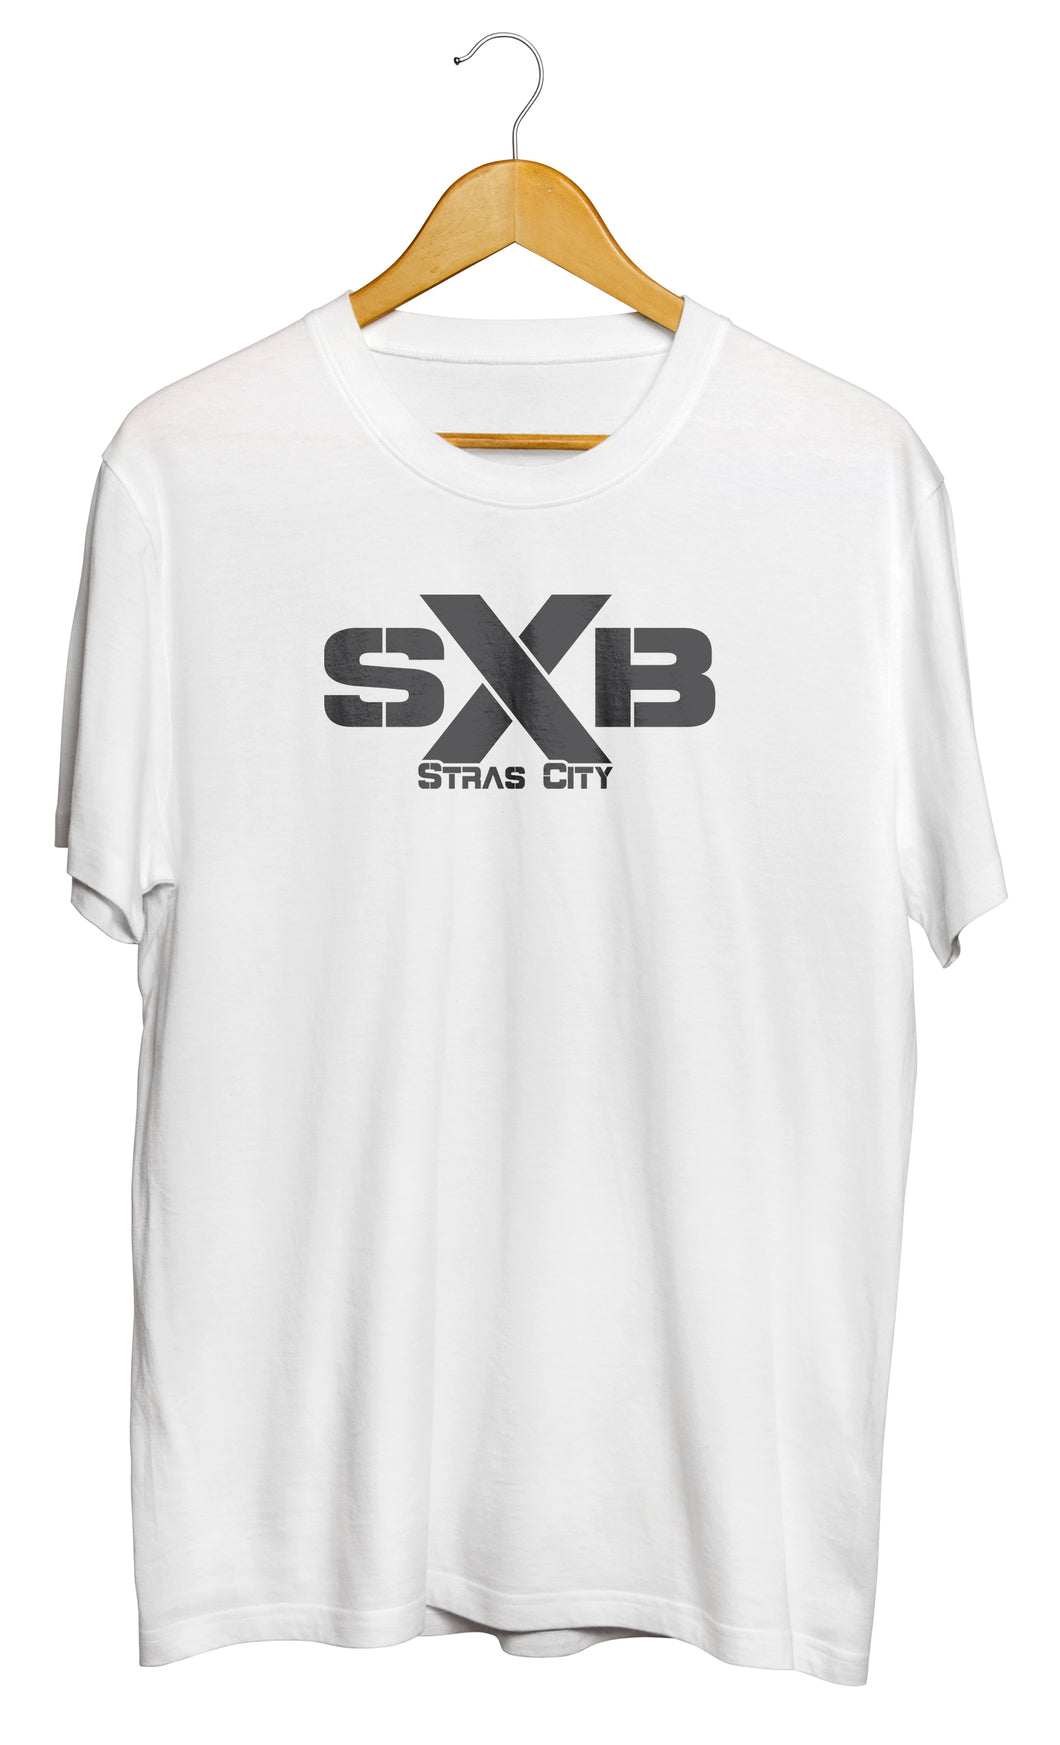 T-shirt original Strasbourg SXB Stras city So Custom